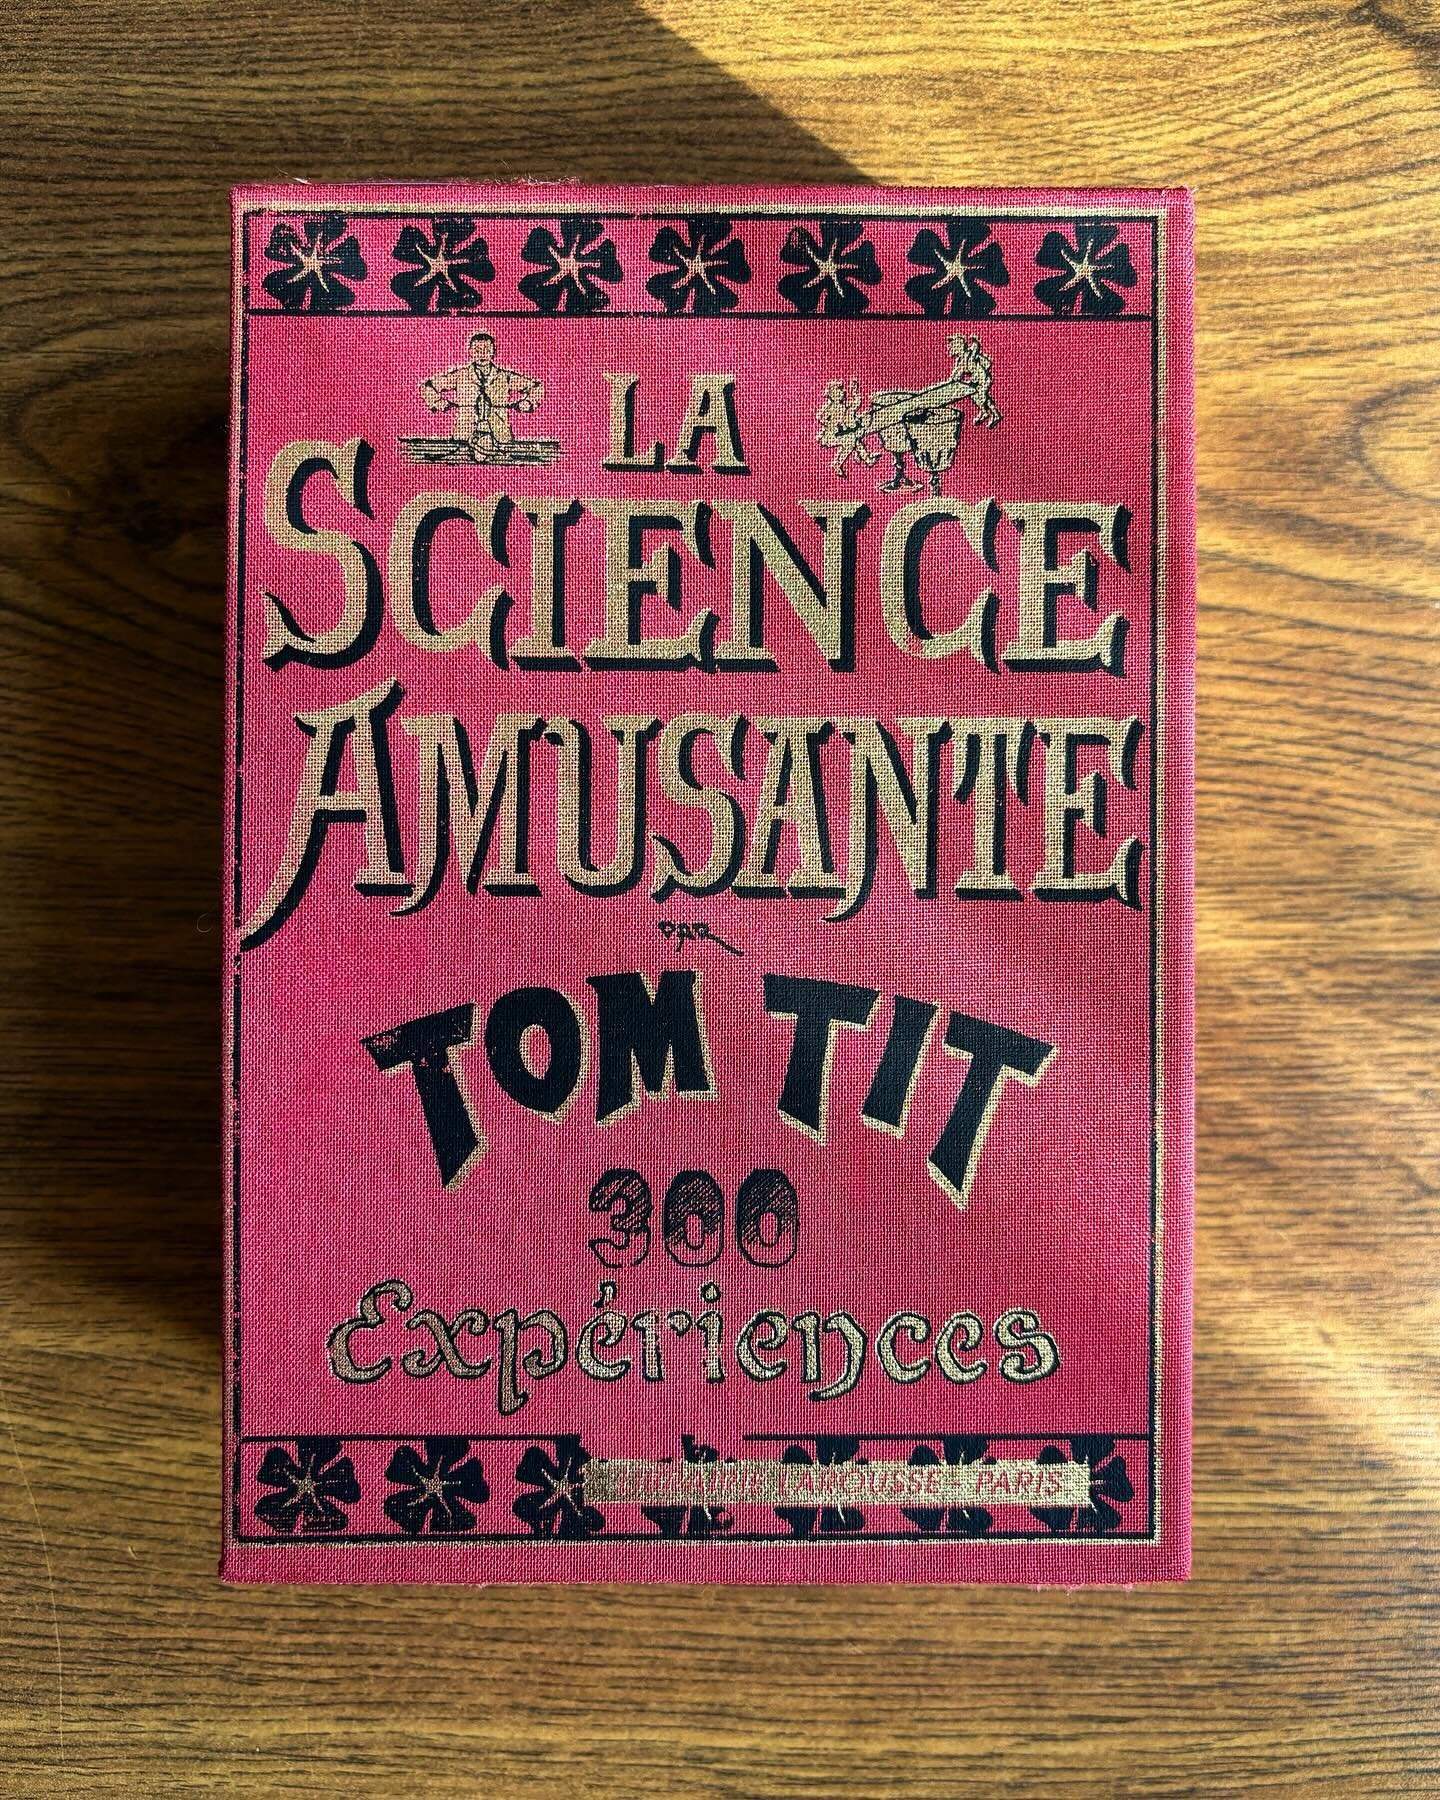 Faites tenir un &oelig;uf debout sur une bouteille avec Tom Tit ! ✨
&mdash;
#tomtit #lascienceamusante #librairie